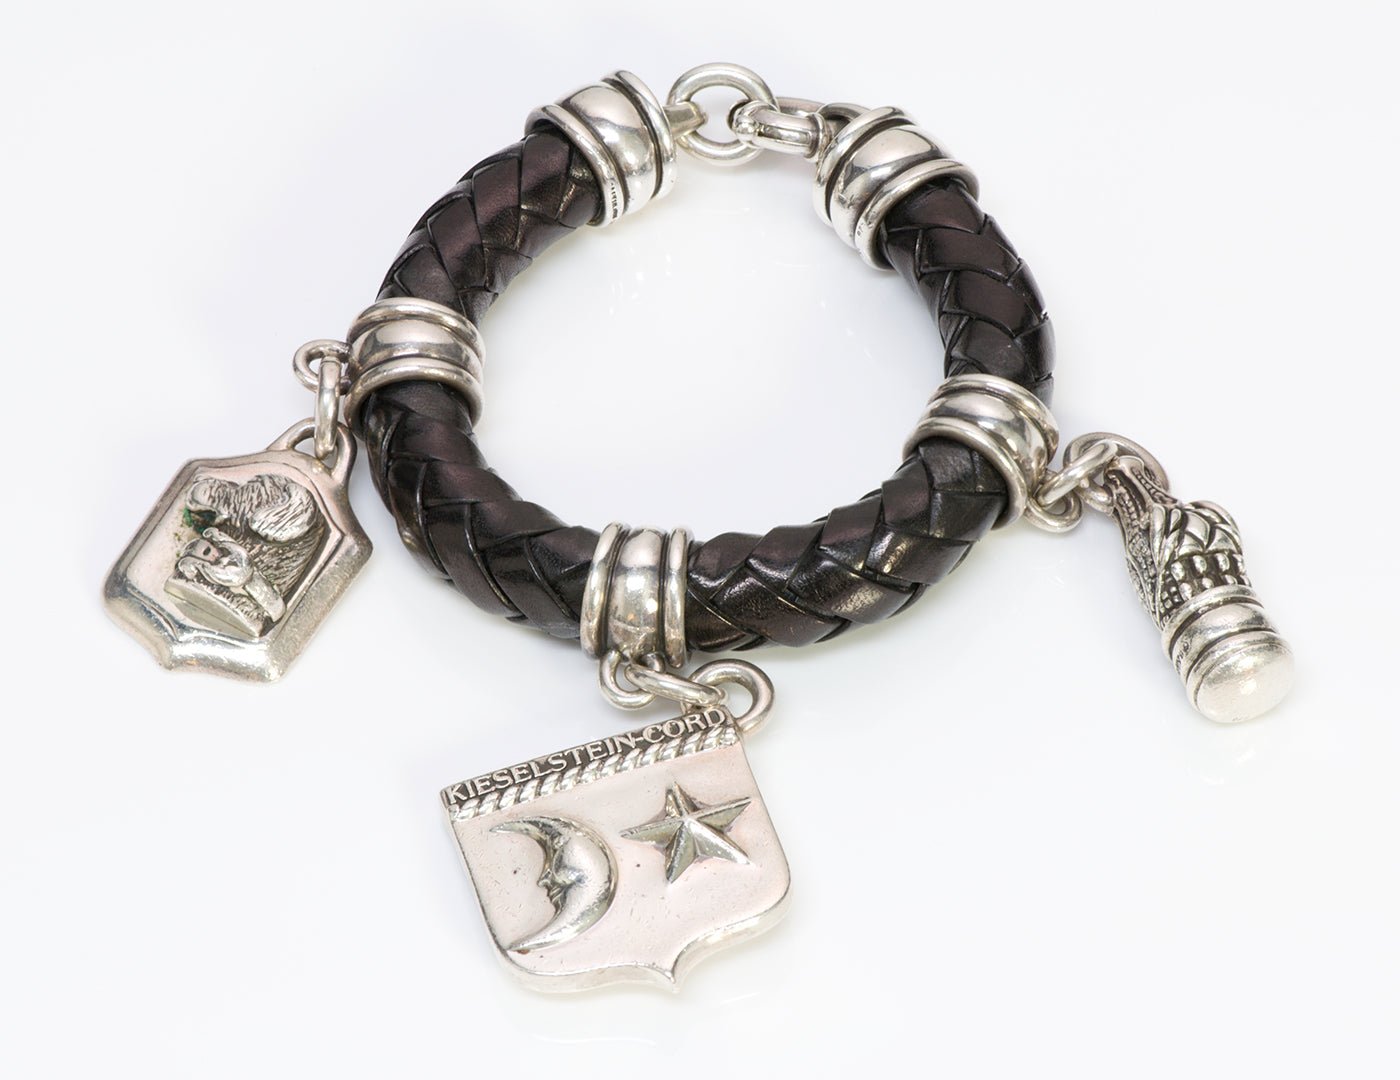 Barry Kieselstein-Cord Silver Charm Leather Bracelet